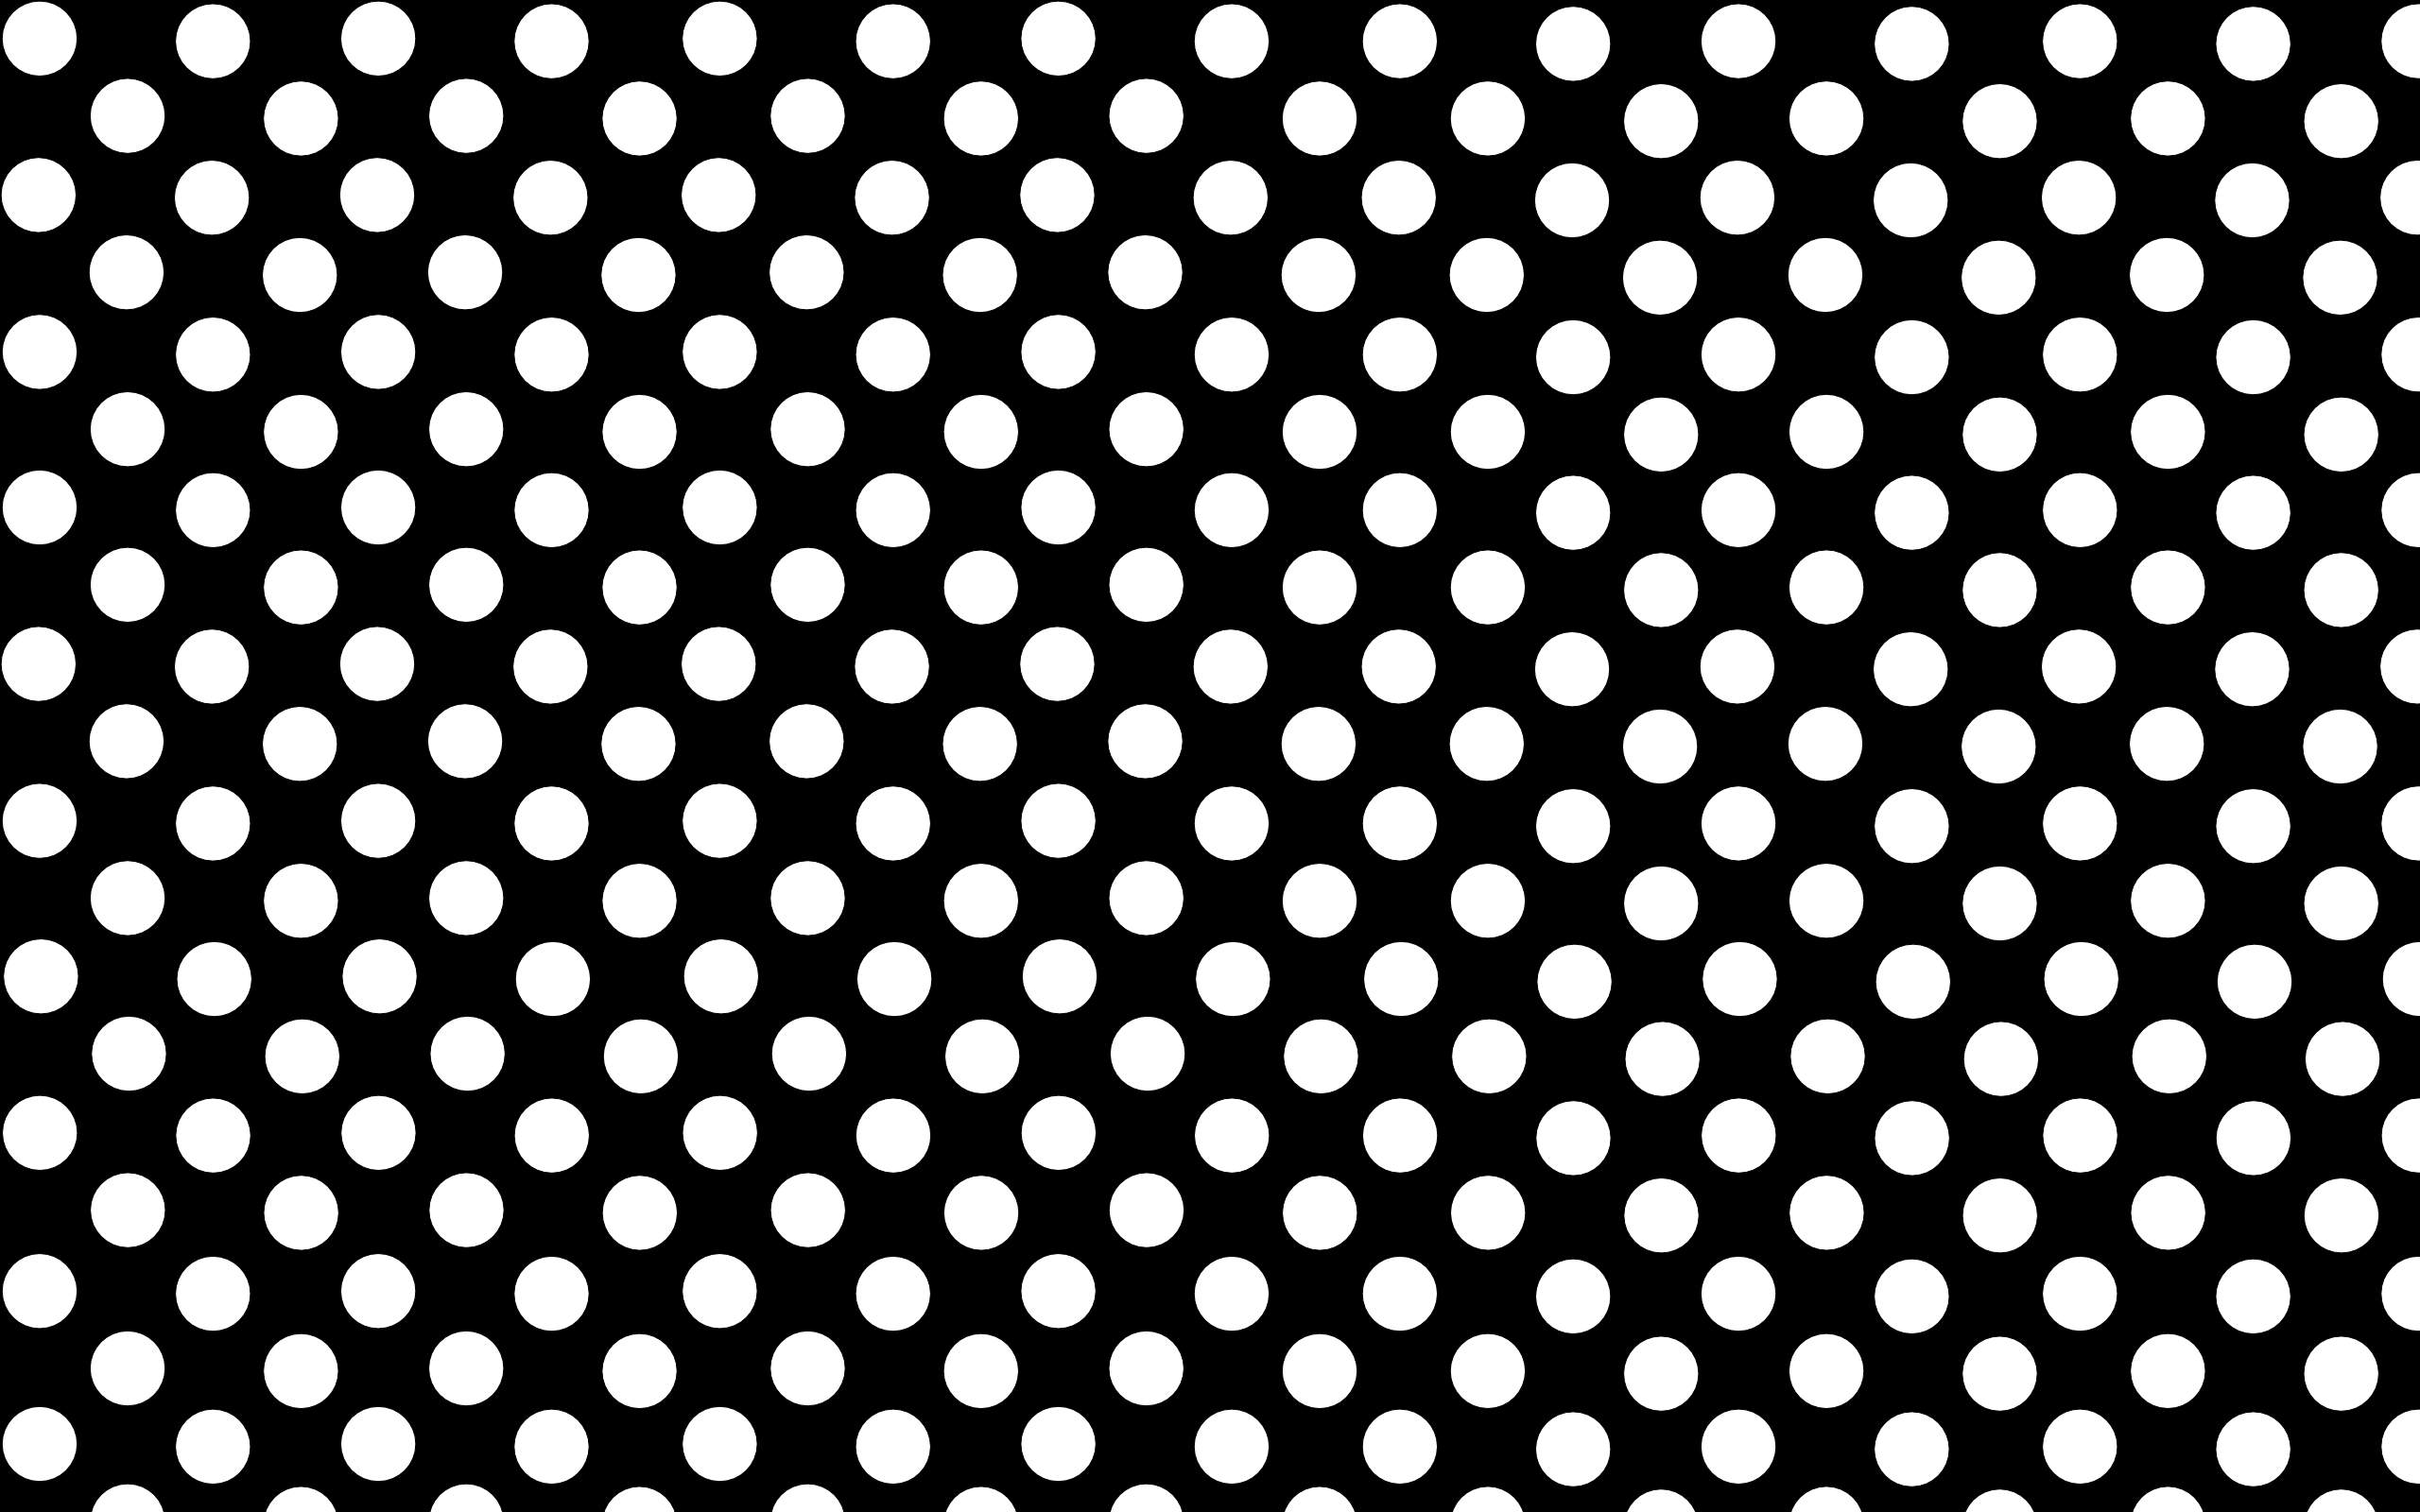 20 Cool Polka Dot Wallpapers - Navy And Pink Polka Dot - HD Wallpaper 